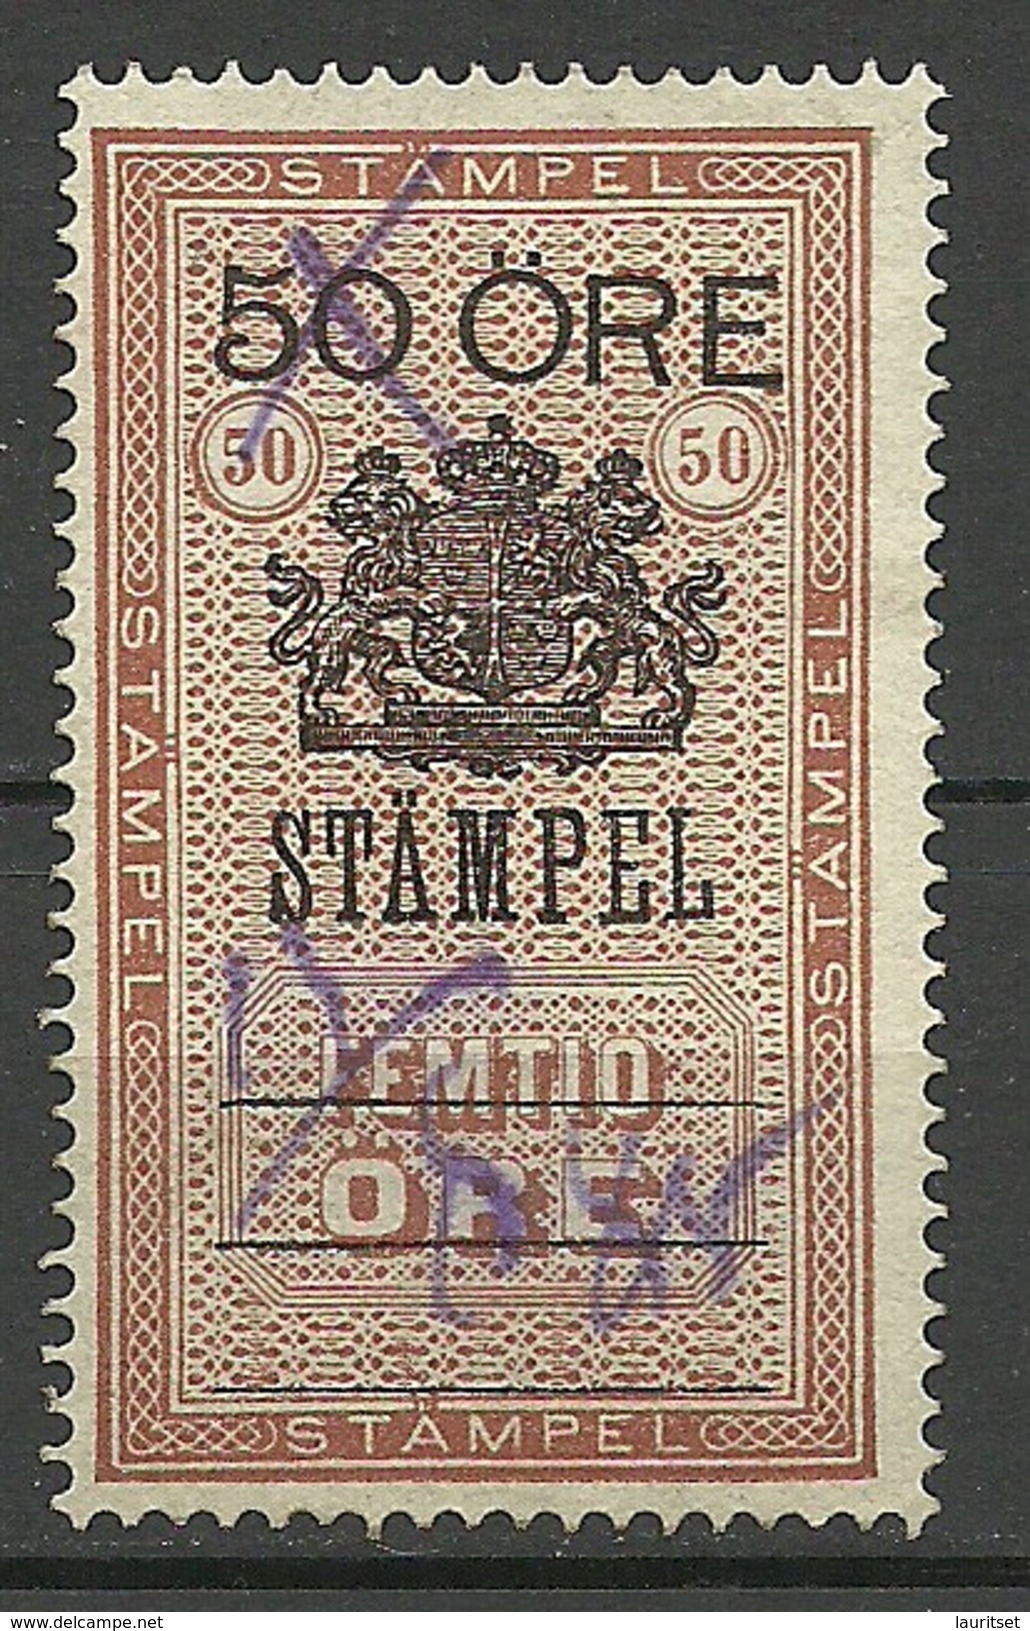 SCHWEDEN Sweden O 1885 Stempelmarke 50 öre O - Steuermarken